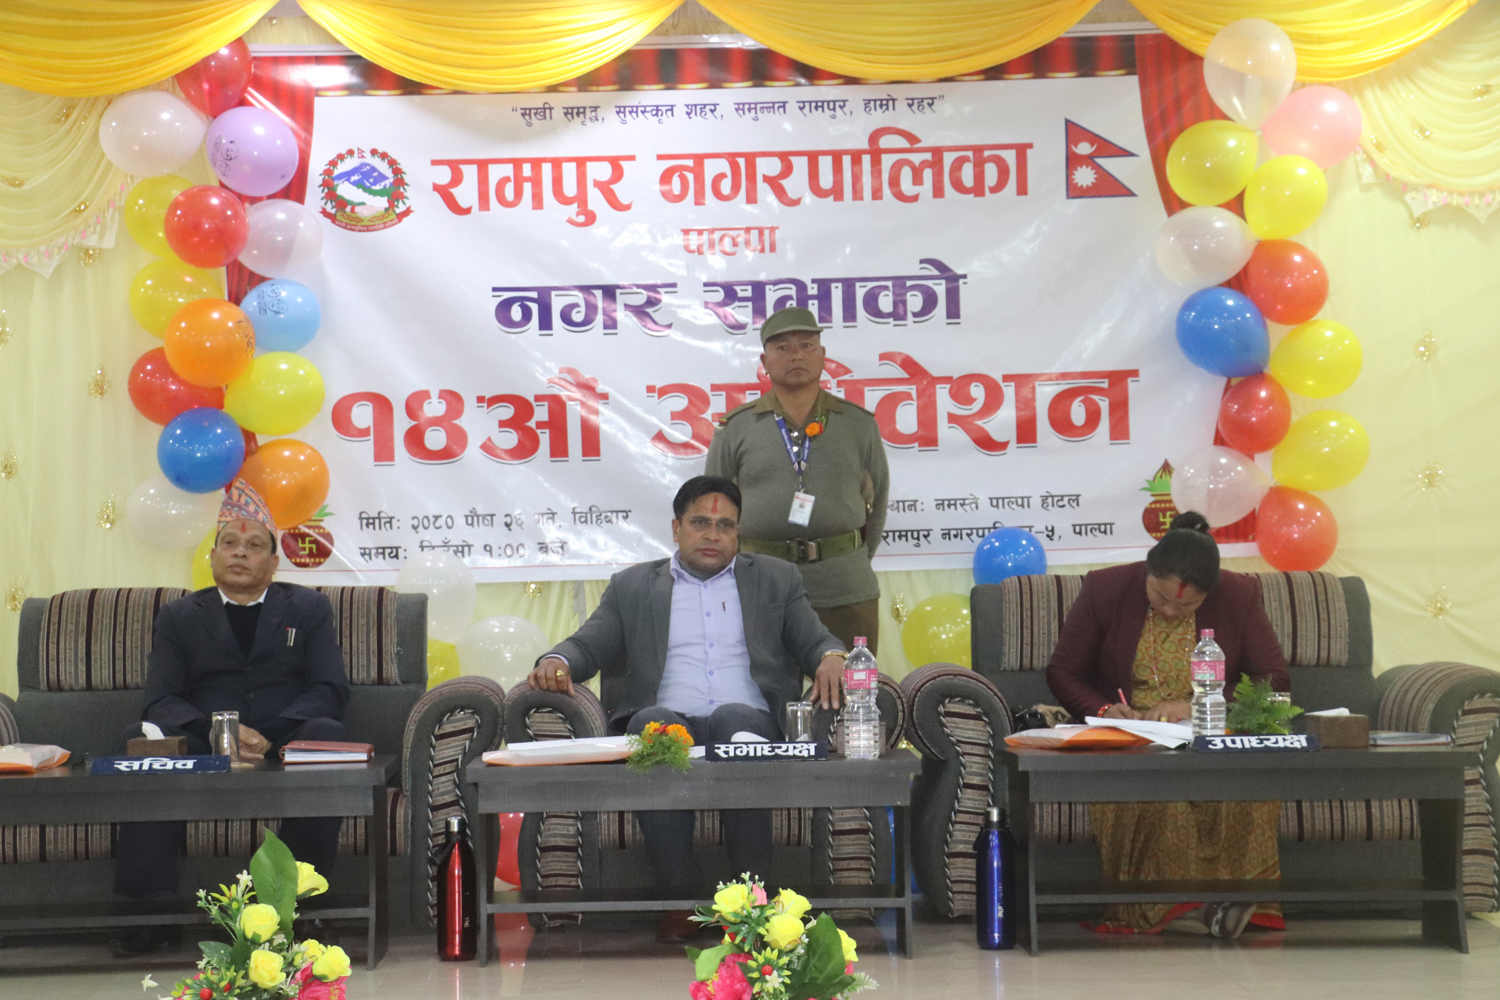 रामपुर नगर सभाको अधिवेशन : बजार अनुगमन ऐनसँगै विभिन्न कार्यविधि पारित  